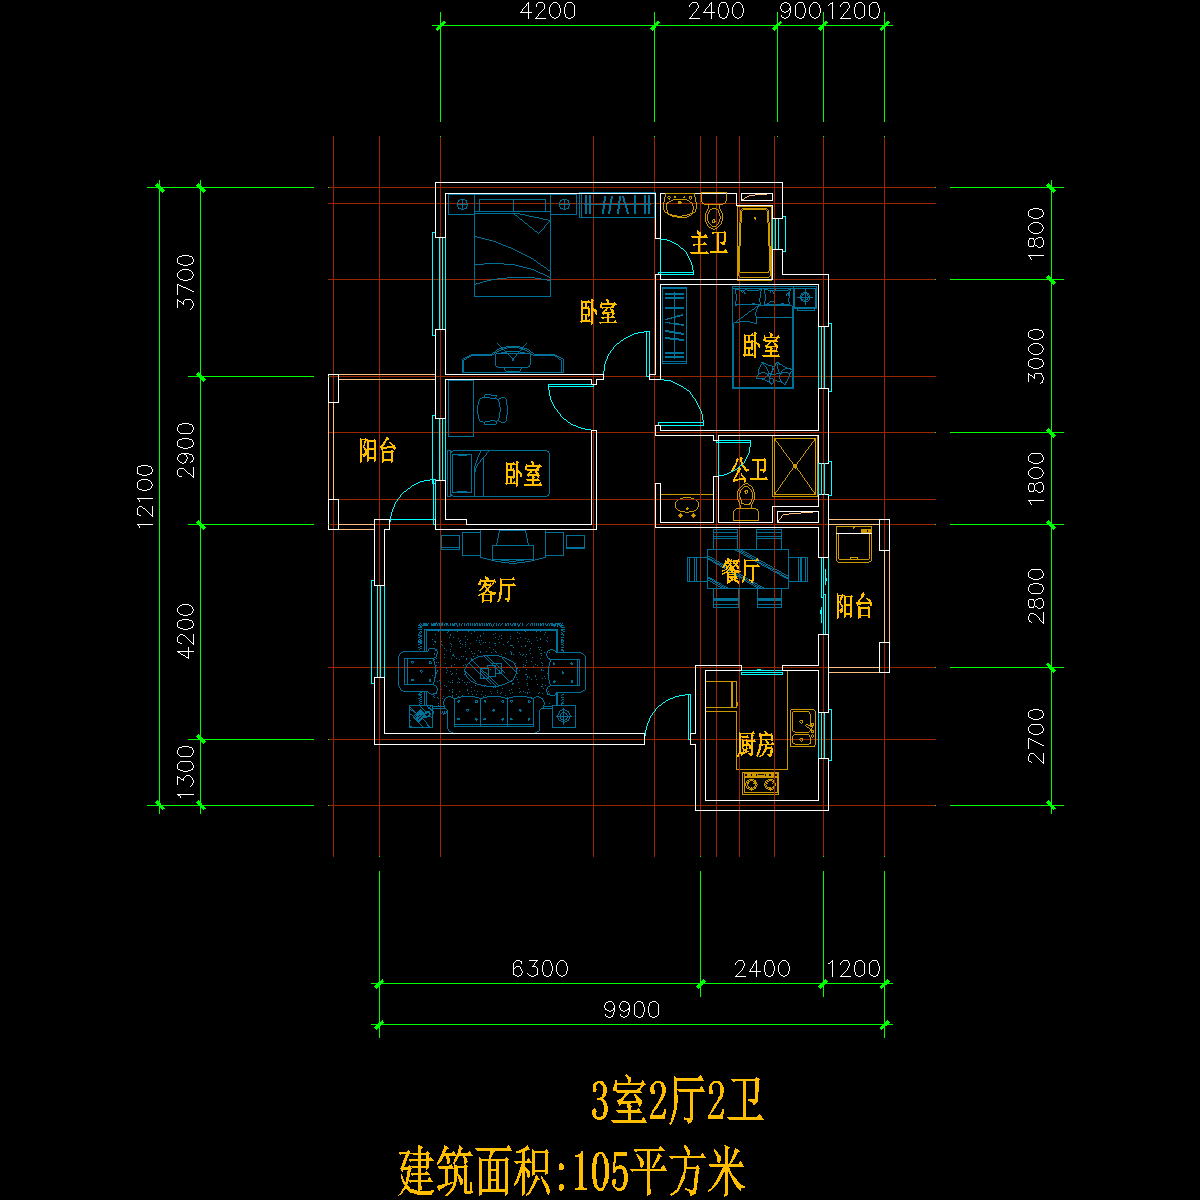 板式多层单户三室二厅二卫户型CAD图纸(105)